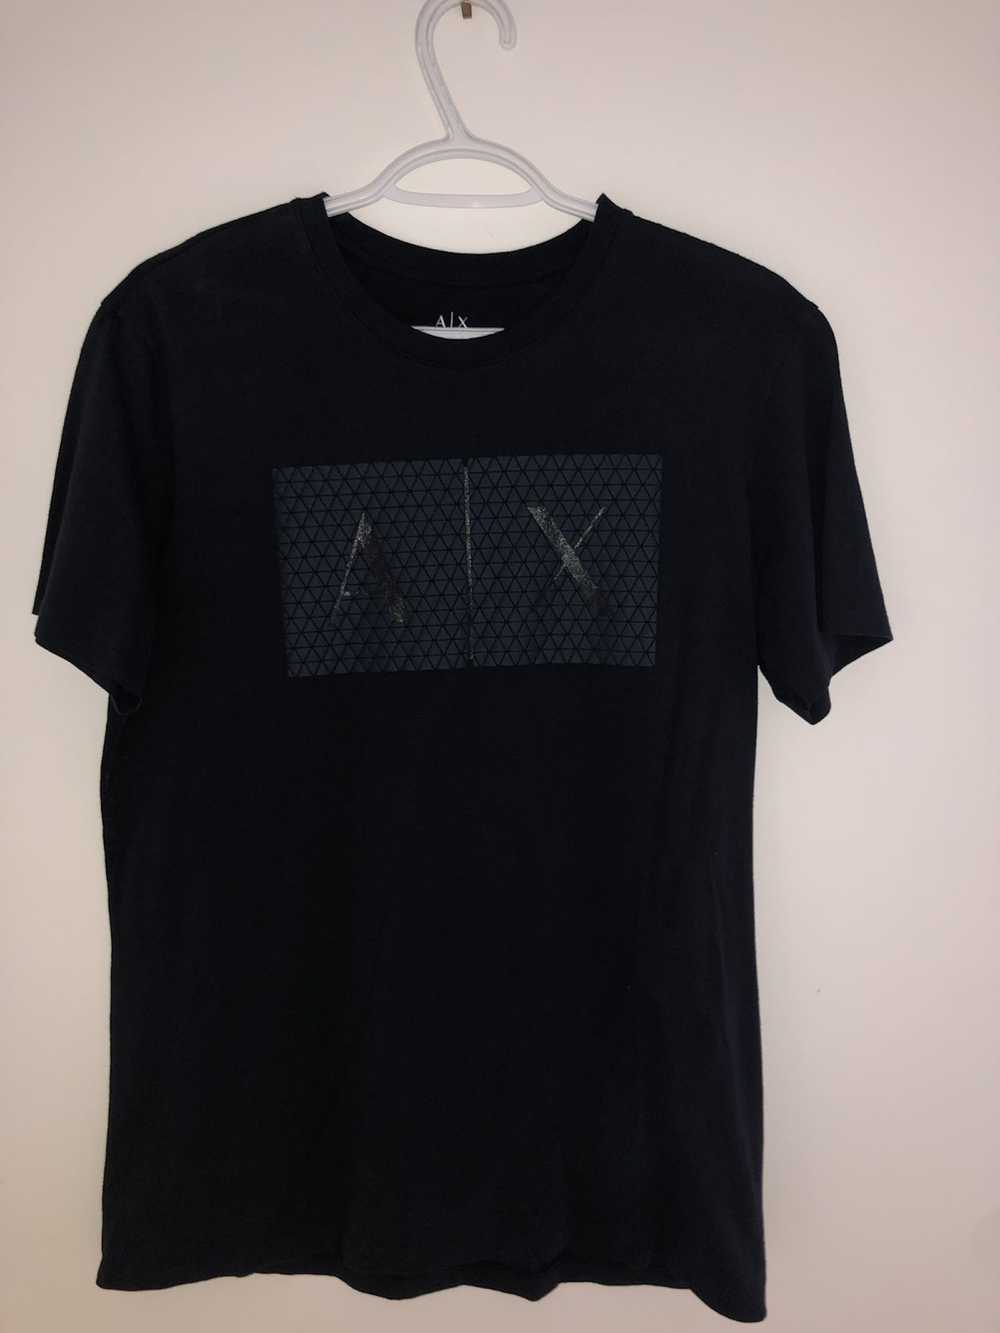 Armani Exchange Armani Exchange AX T-Shirt Navy N… - image 1